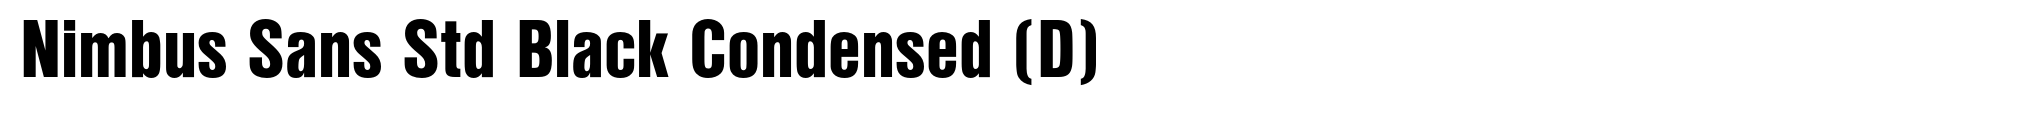 Nimbus Sans Std Black Condensed (D) image